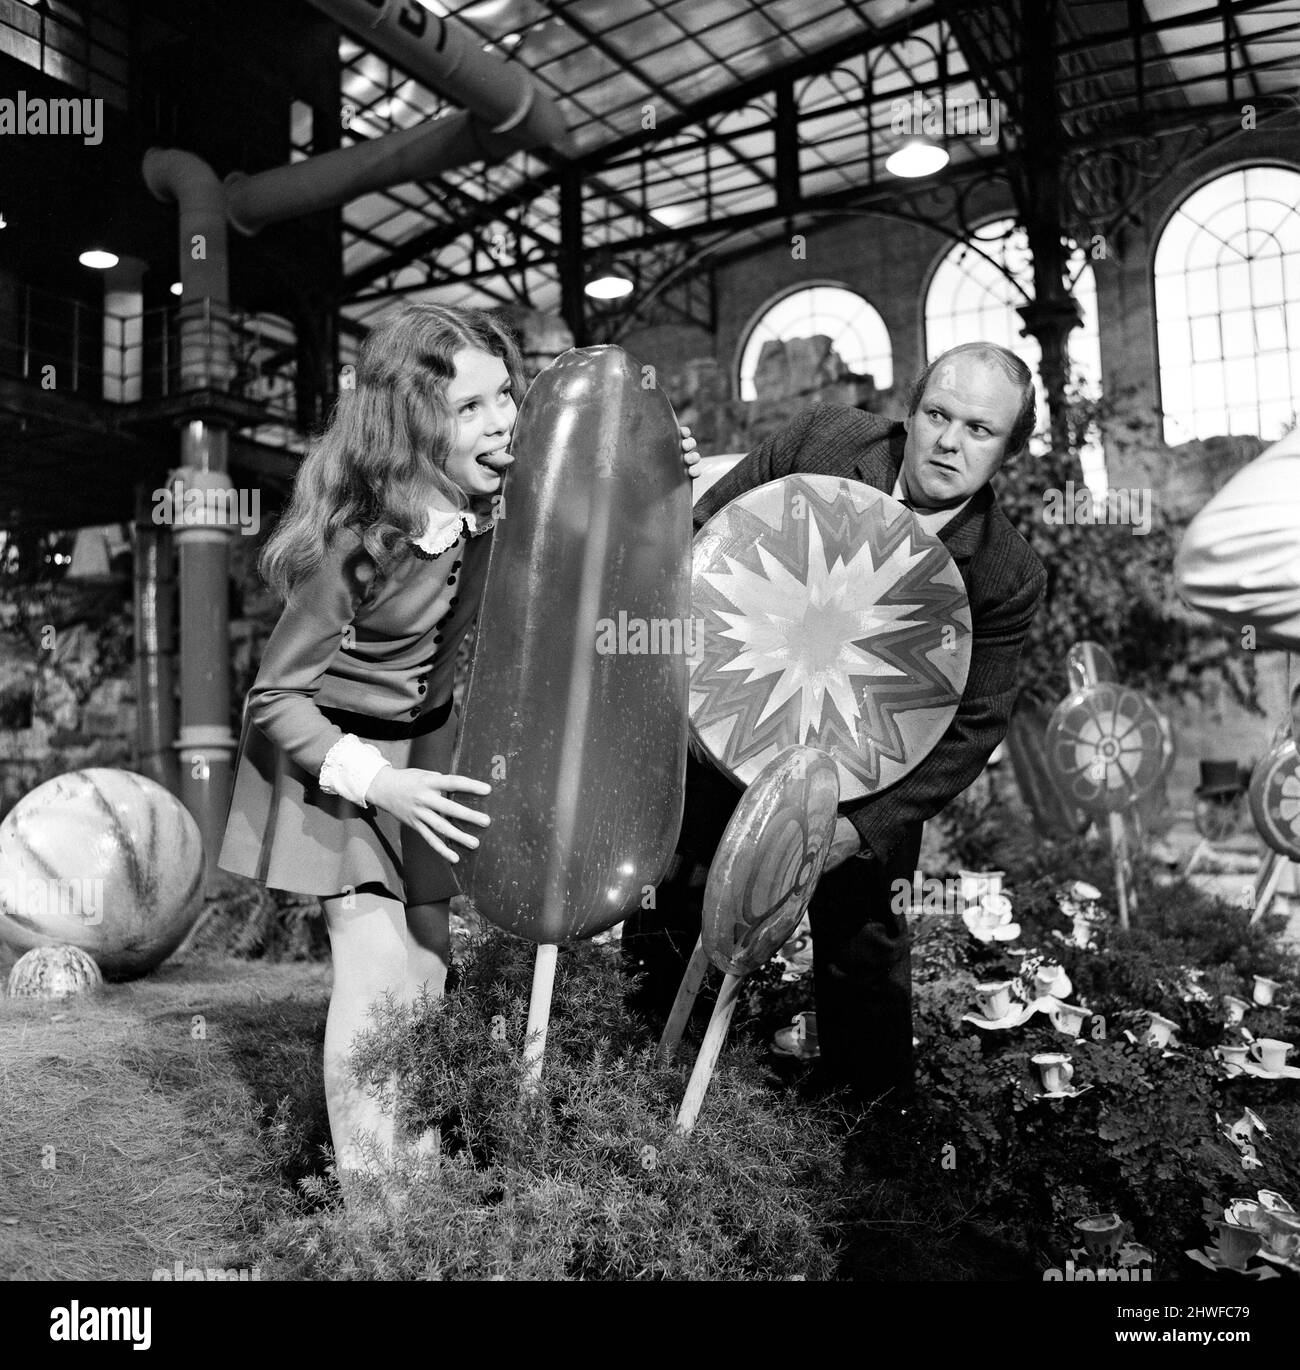 La salle de chocolat du suprêtier de bonbons, Willy Wonka, peut descendre dans l'histoire de l'écran comme non seulement l'un des plus impressionnants studios jamais construits, mais peut-être aussi le plus savoureux. L'immense salle de bonbons a été construite sur la plus grande scène sonore des studios Bavaria de Munich, où la production de David L. Wolper de 'Willy Wonka et la chocolaterie' est en cours de tournage. La seule fille britannique du film, Julie Dawn, âgée de 12 ans, de Guildford, a le goût d'un des sucettes géantes regardées par l'acteur britannique Roy Kinnear, qui joue son père. 8th octobre 1970. Banque D'Images